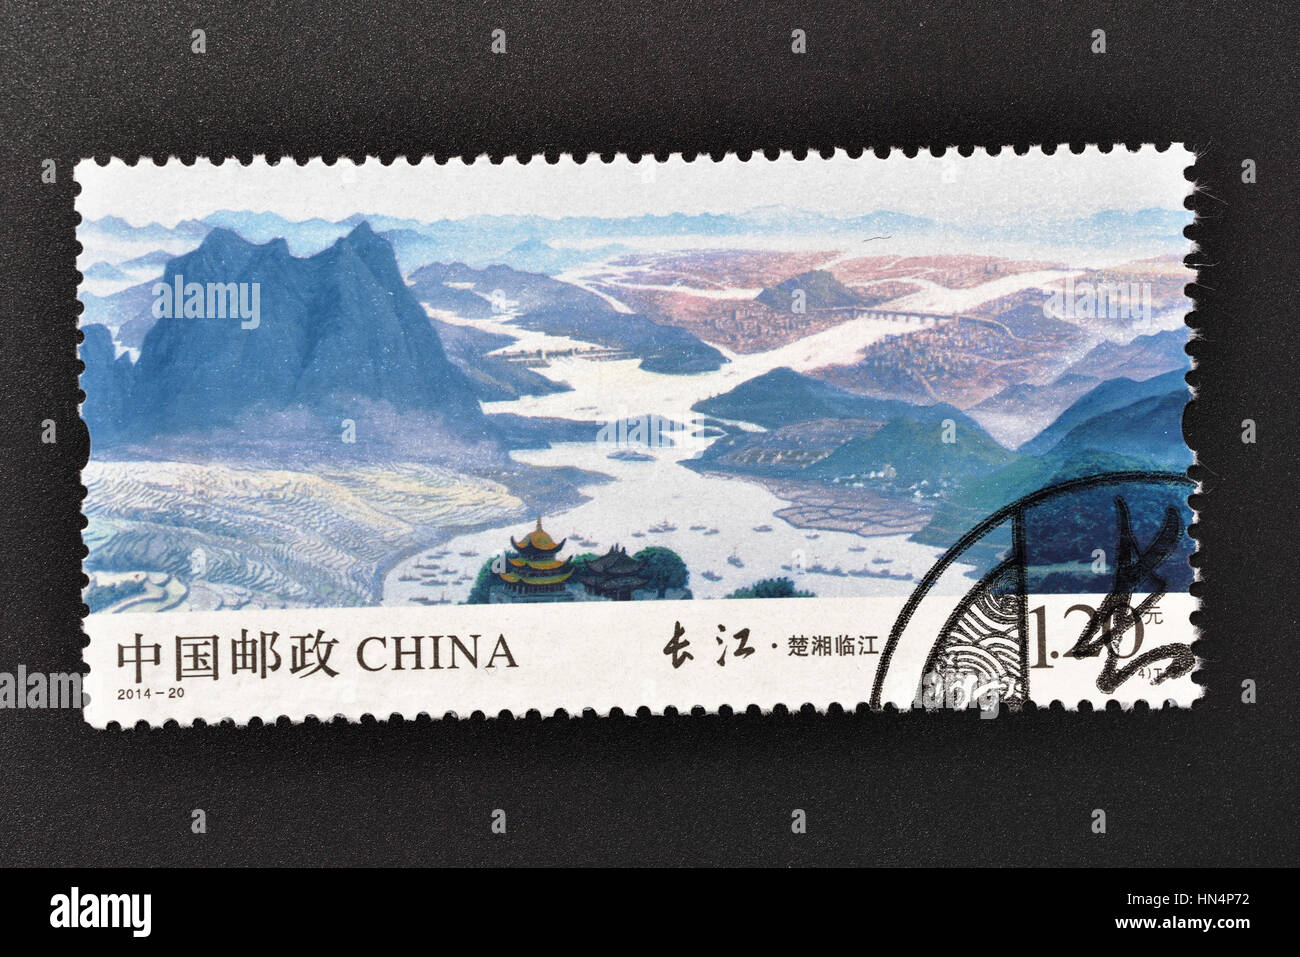 CHINA - CIRCA 2014: A stamp printed in P.R.China shows 2014-20 Chinese Yangtze River (Yangzijiang Changjiang),circa 2014. Stock Photo